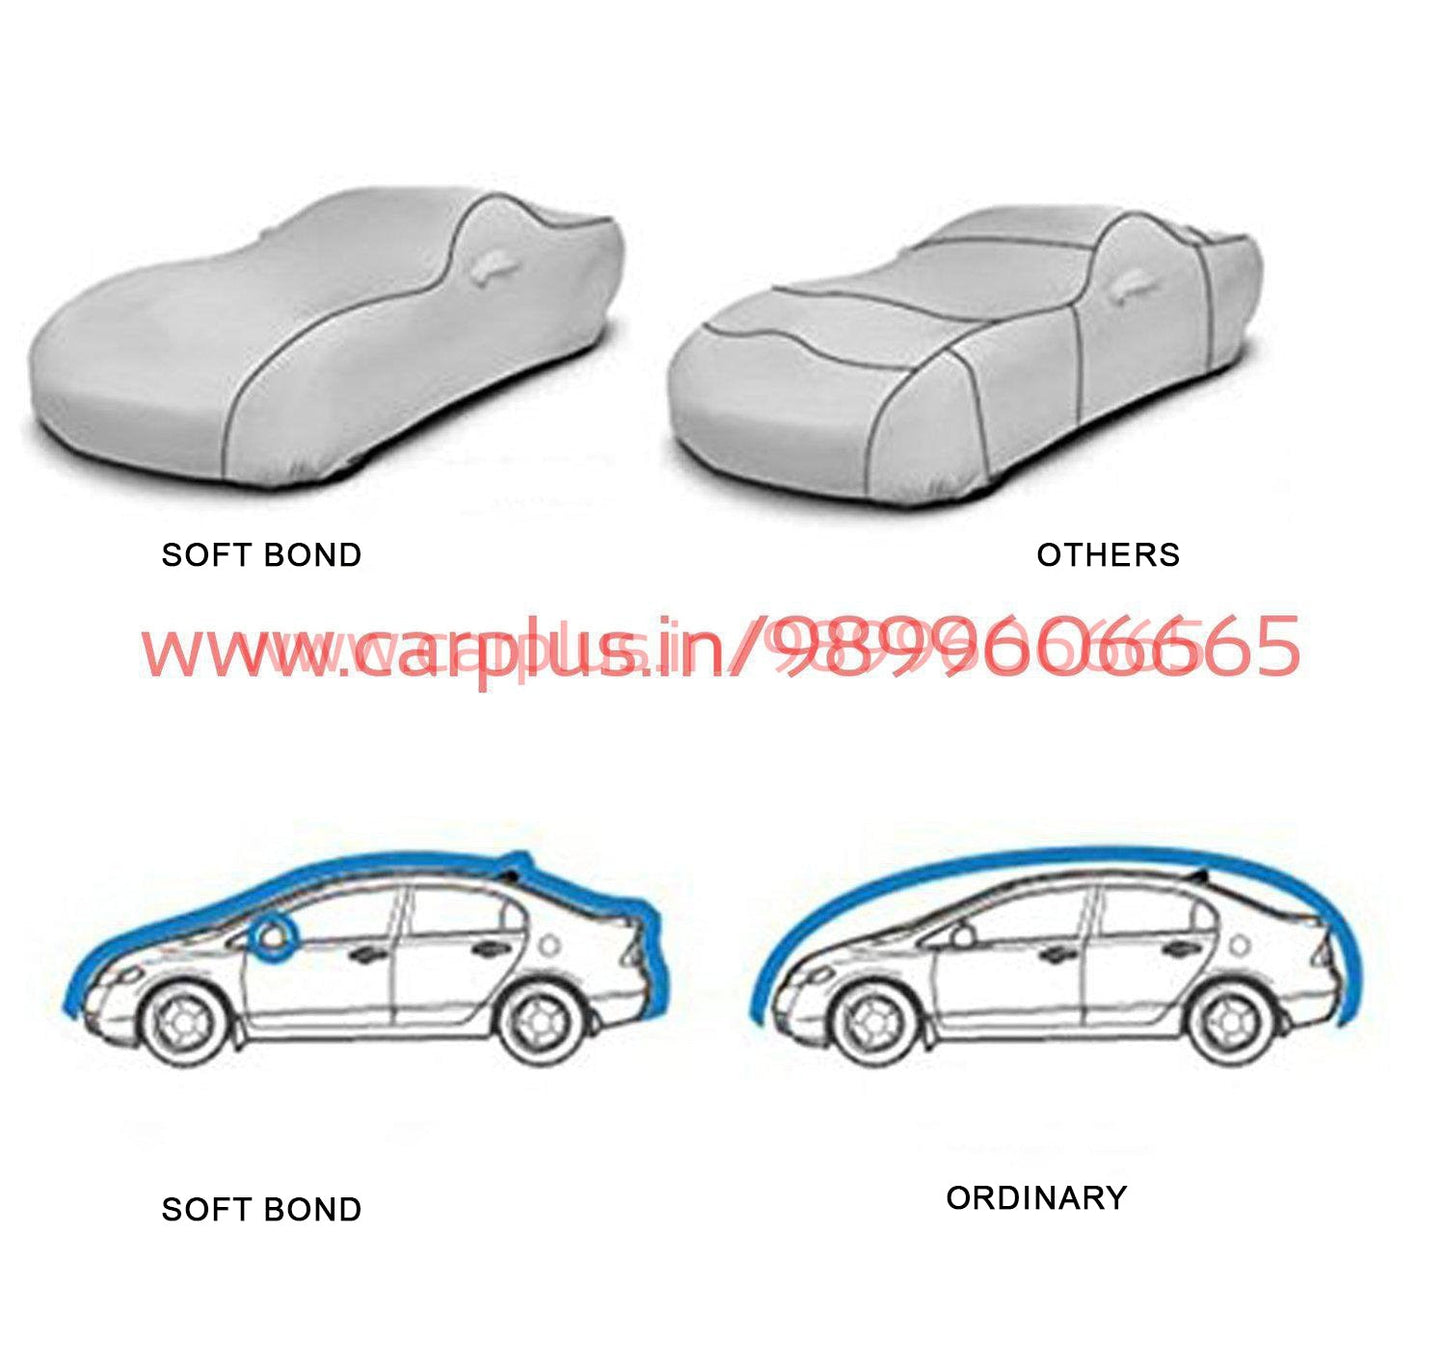 
                  
                    Soft Bond Body Cover for Range Rover Evoque-Grey-Body Cover-SOFT BOND-CARPLUS
                  
                